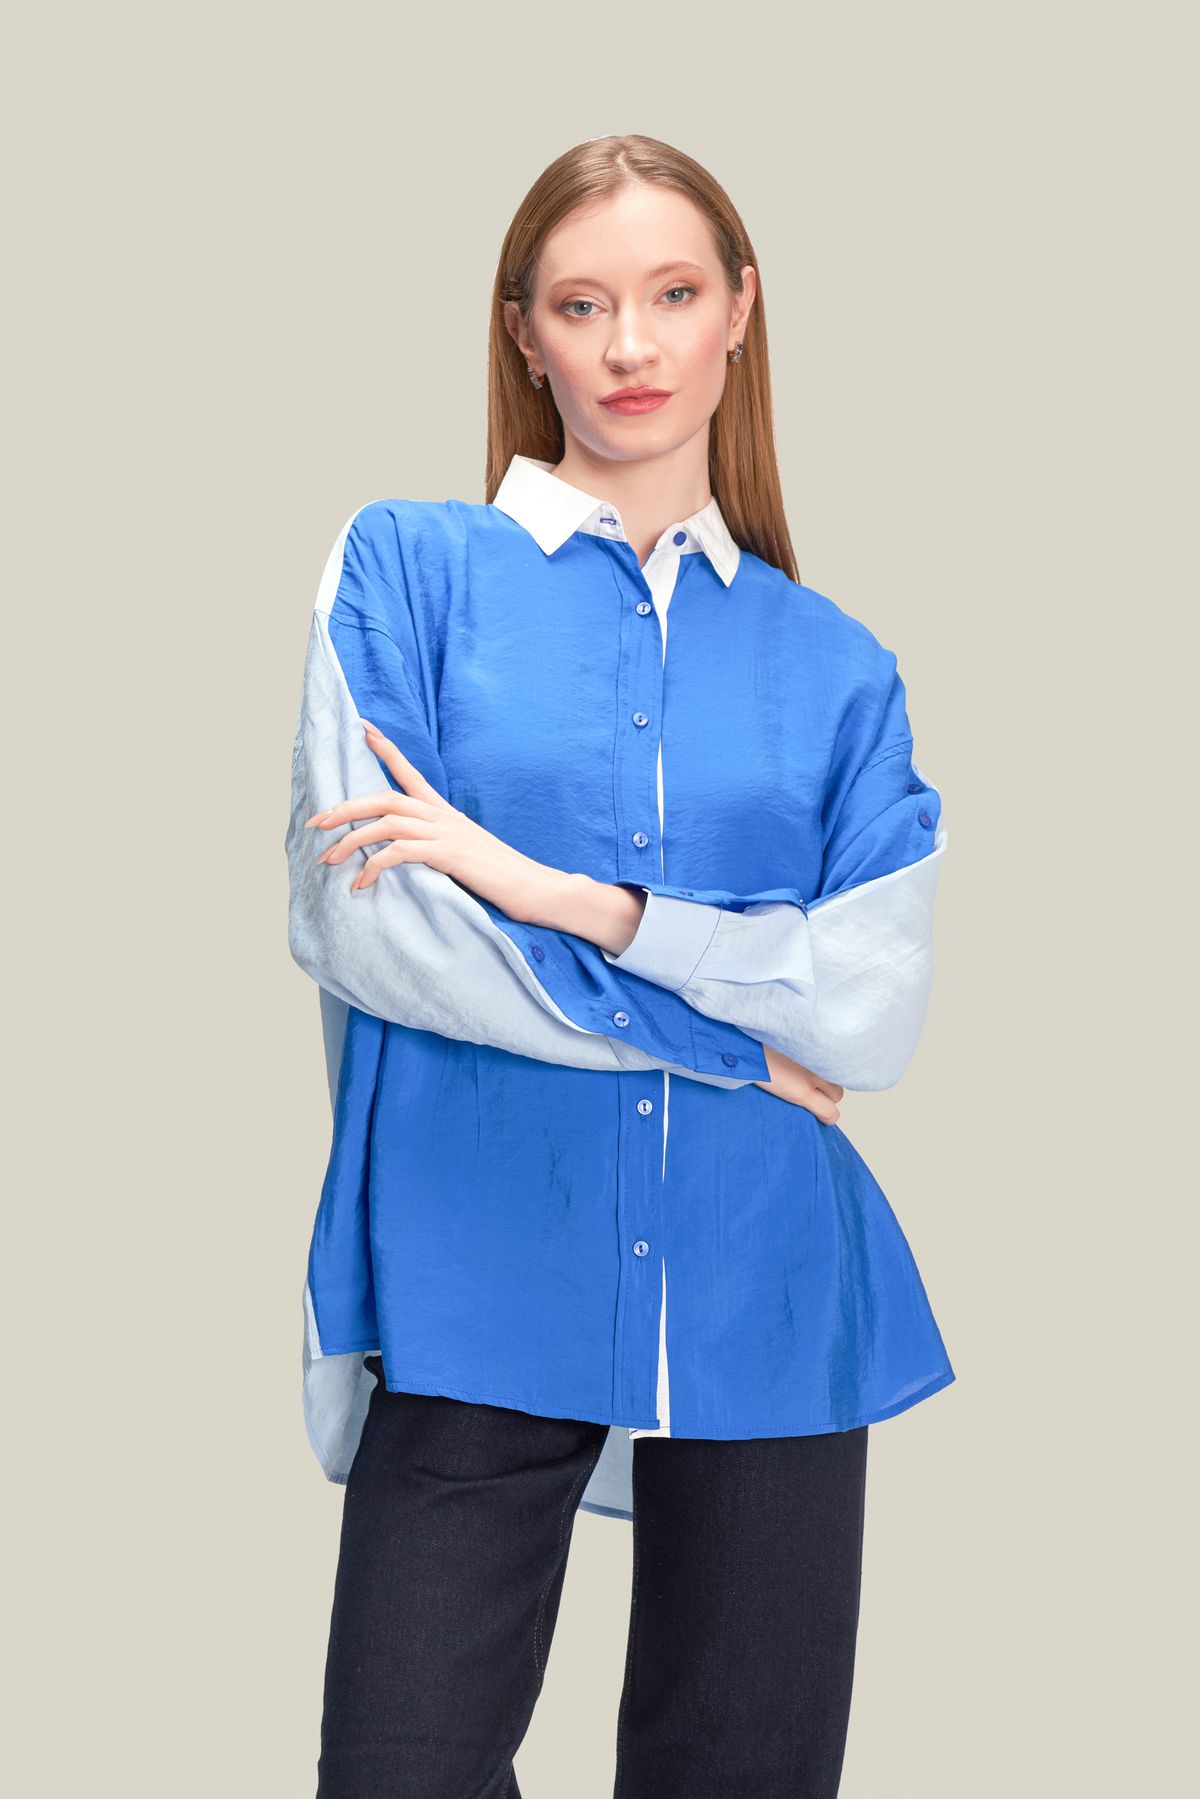 thepery The Pery Mavi Kadın Modal Tasarım Gömlek Kol Düğme Detaylı